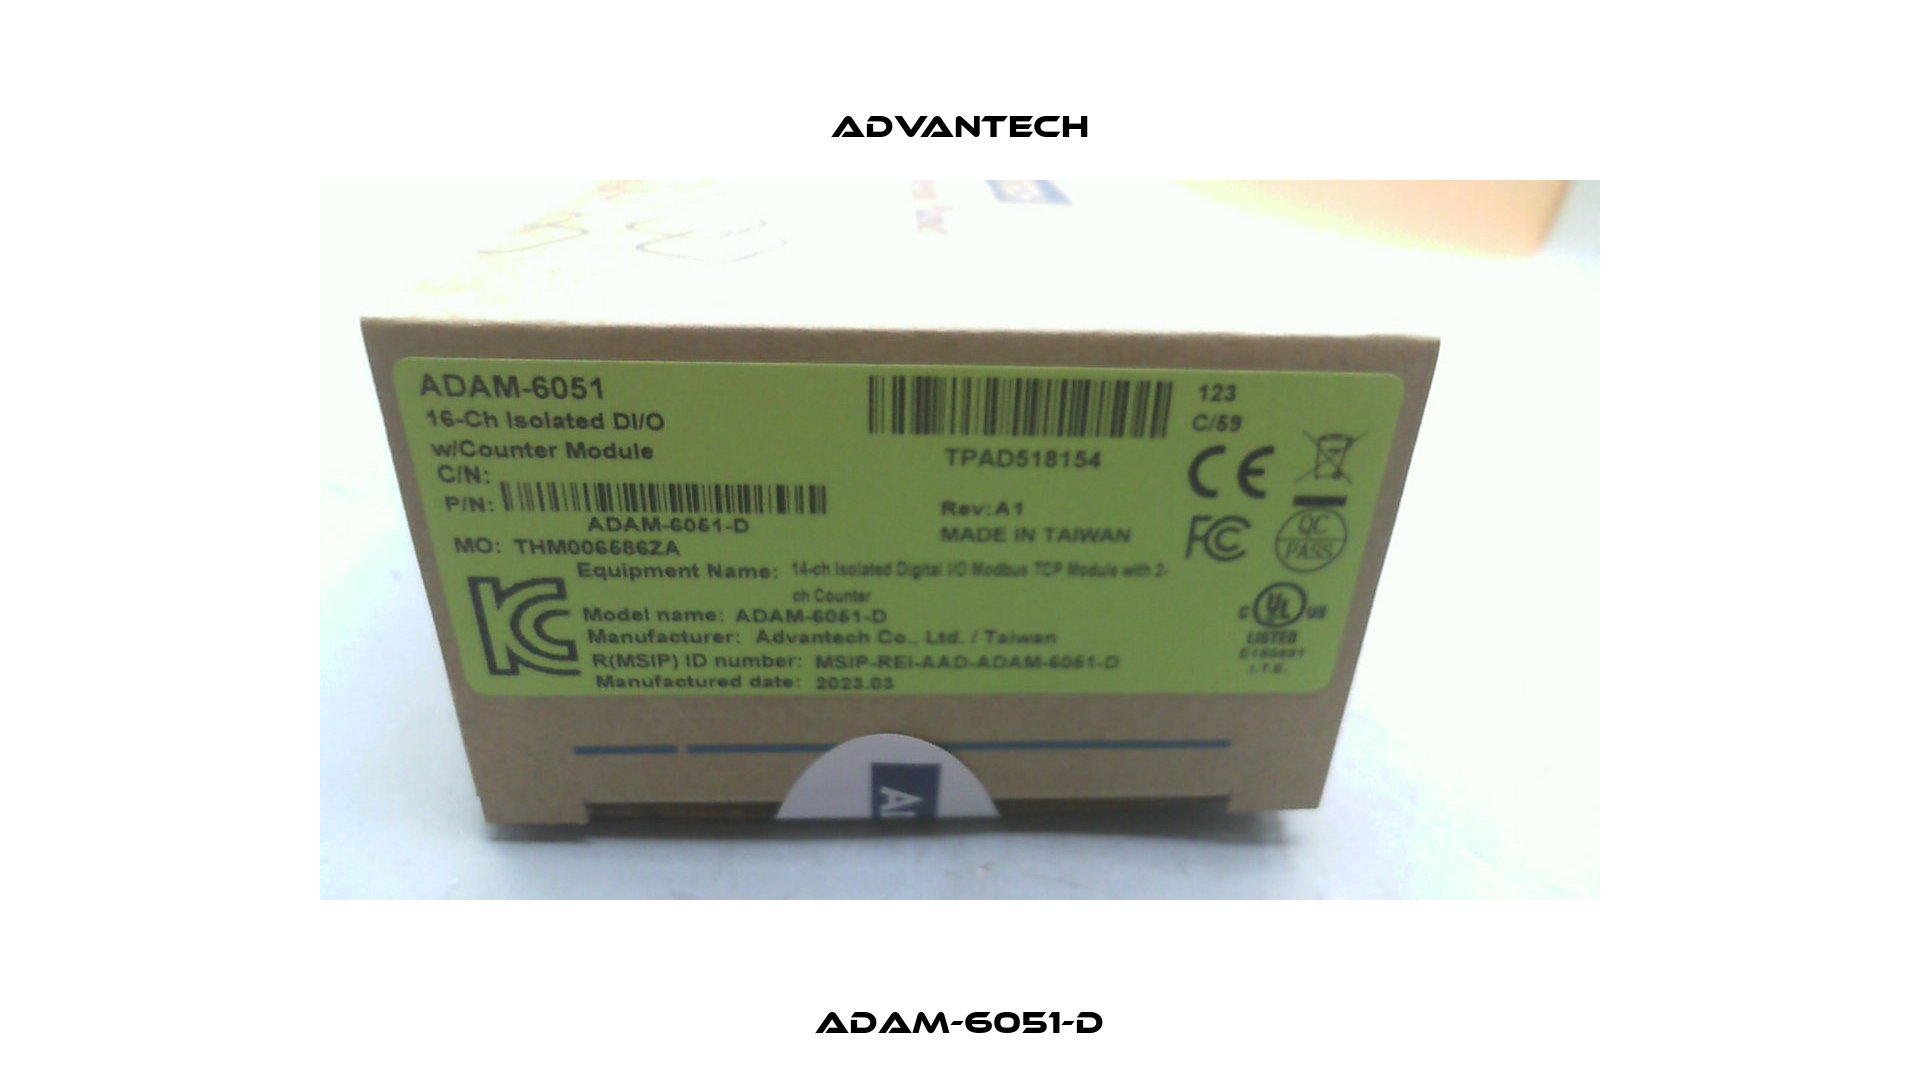 ADAM-6051-D Advantech